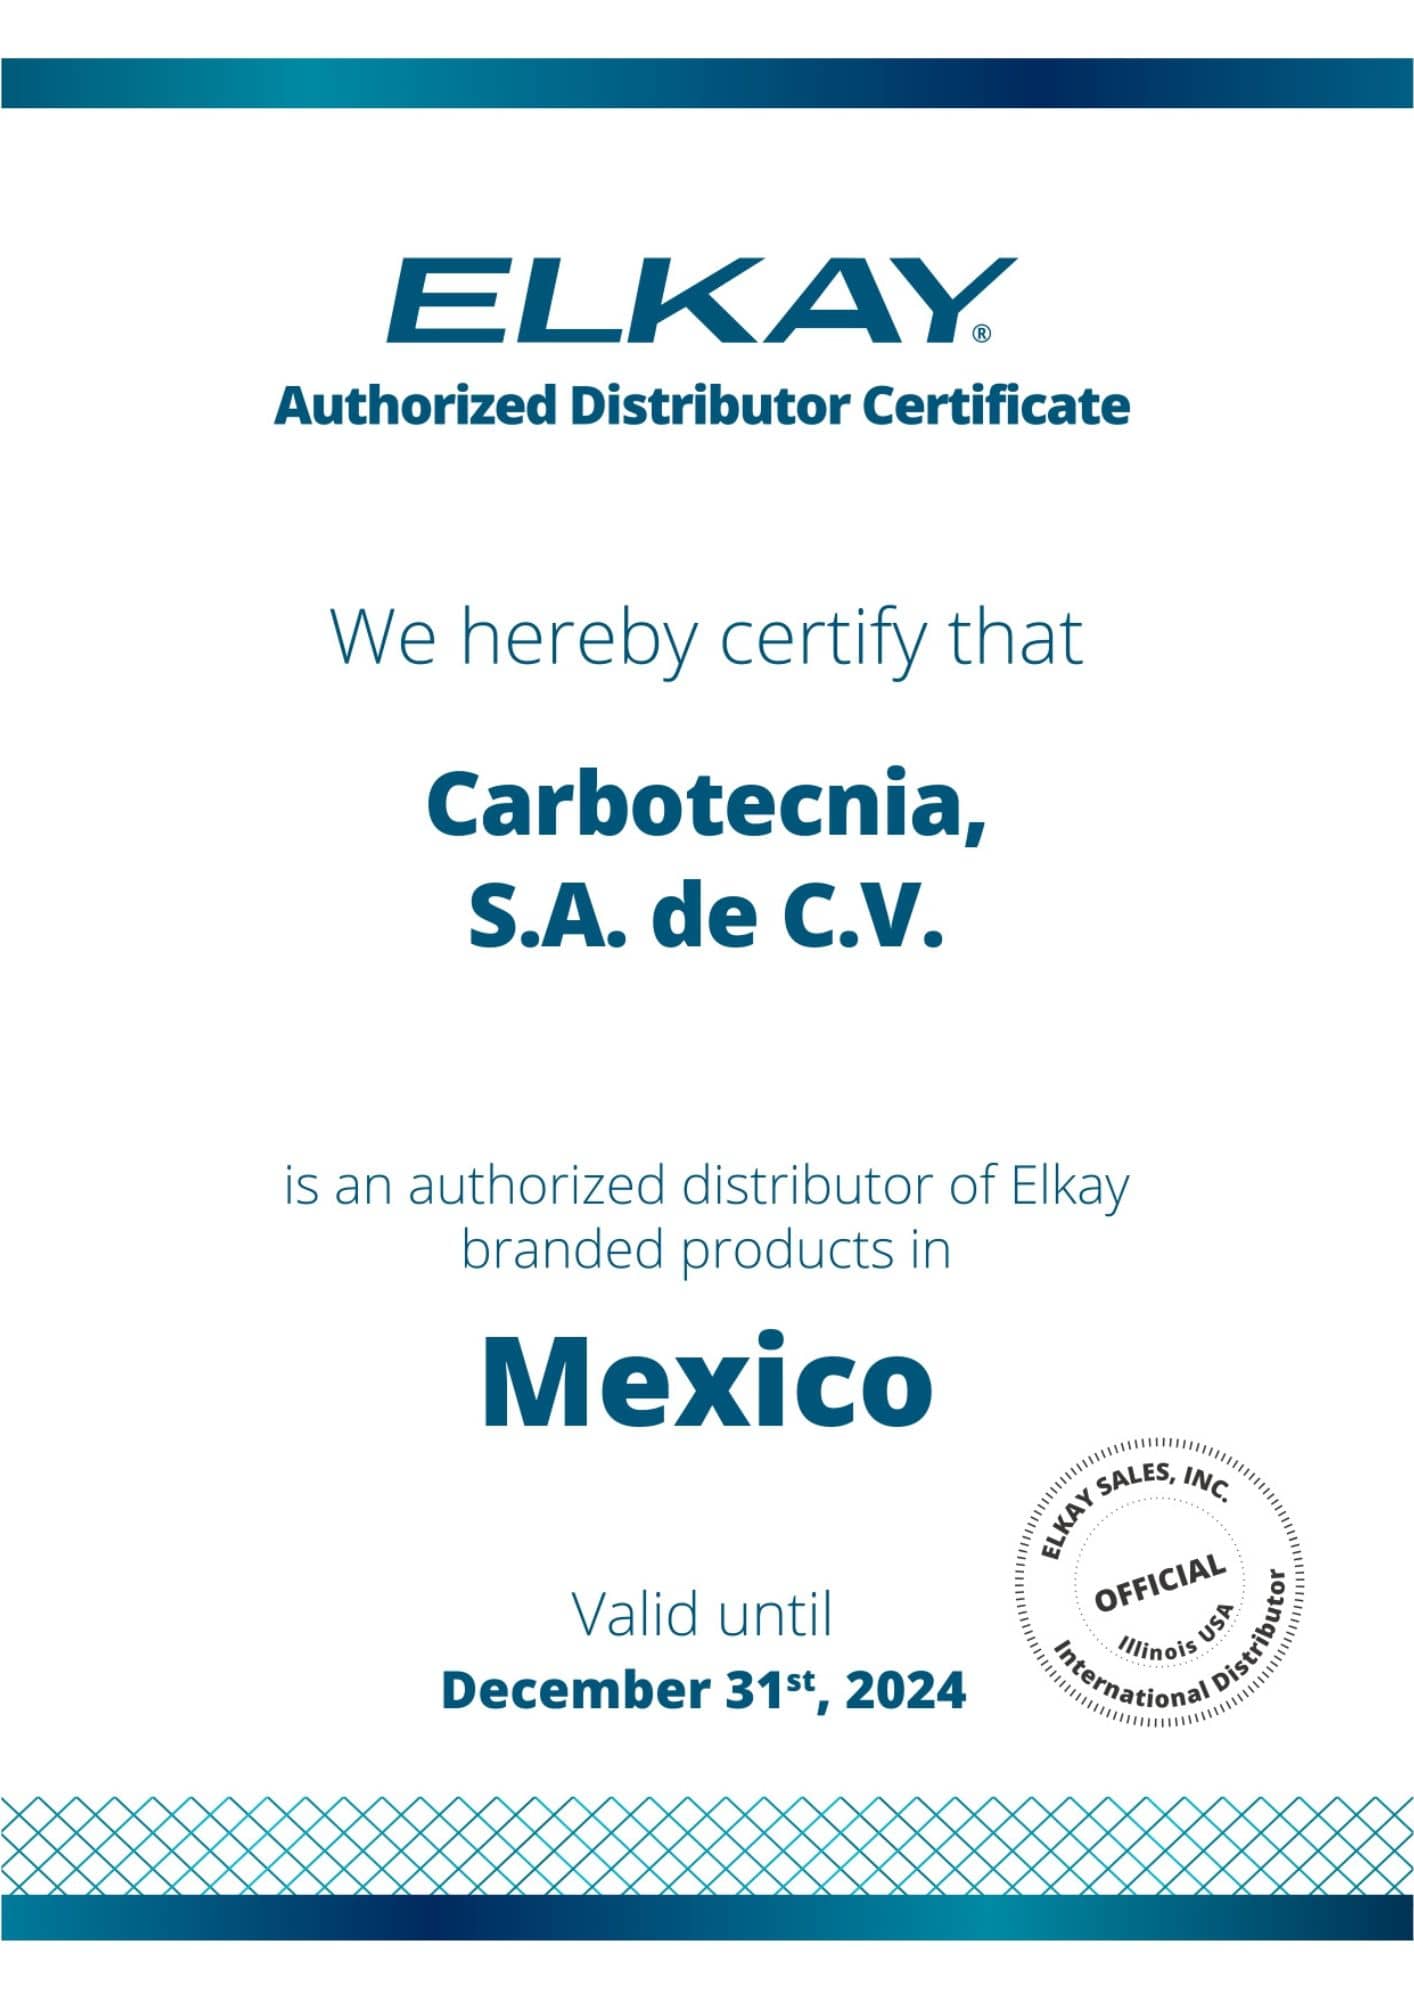 Certificado de distribuidor autorizado Elkay 2024 Carbotecnia